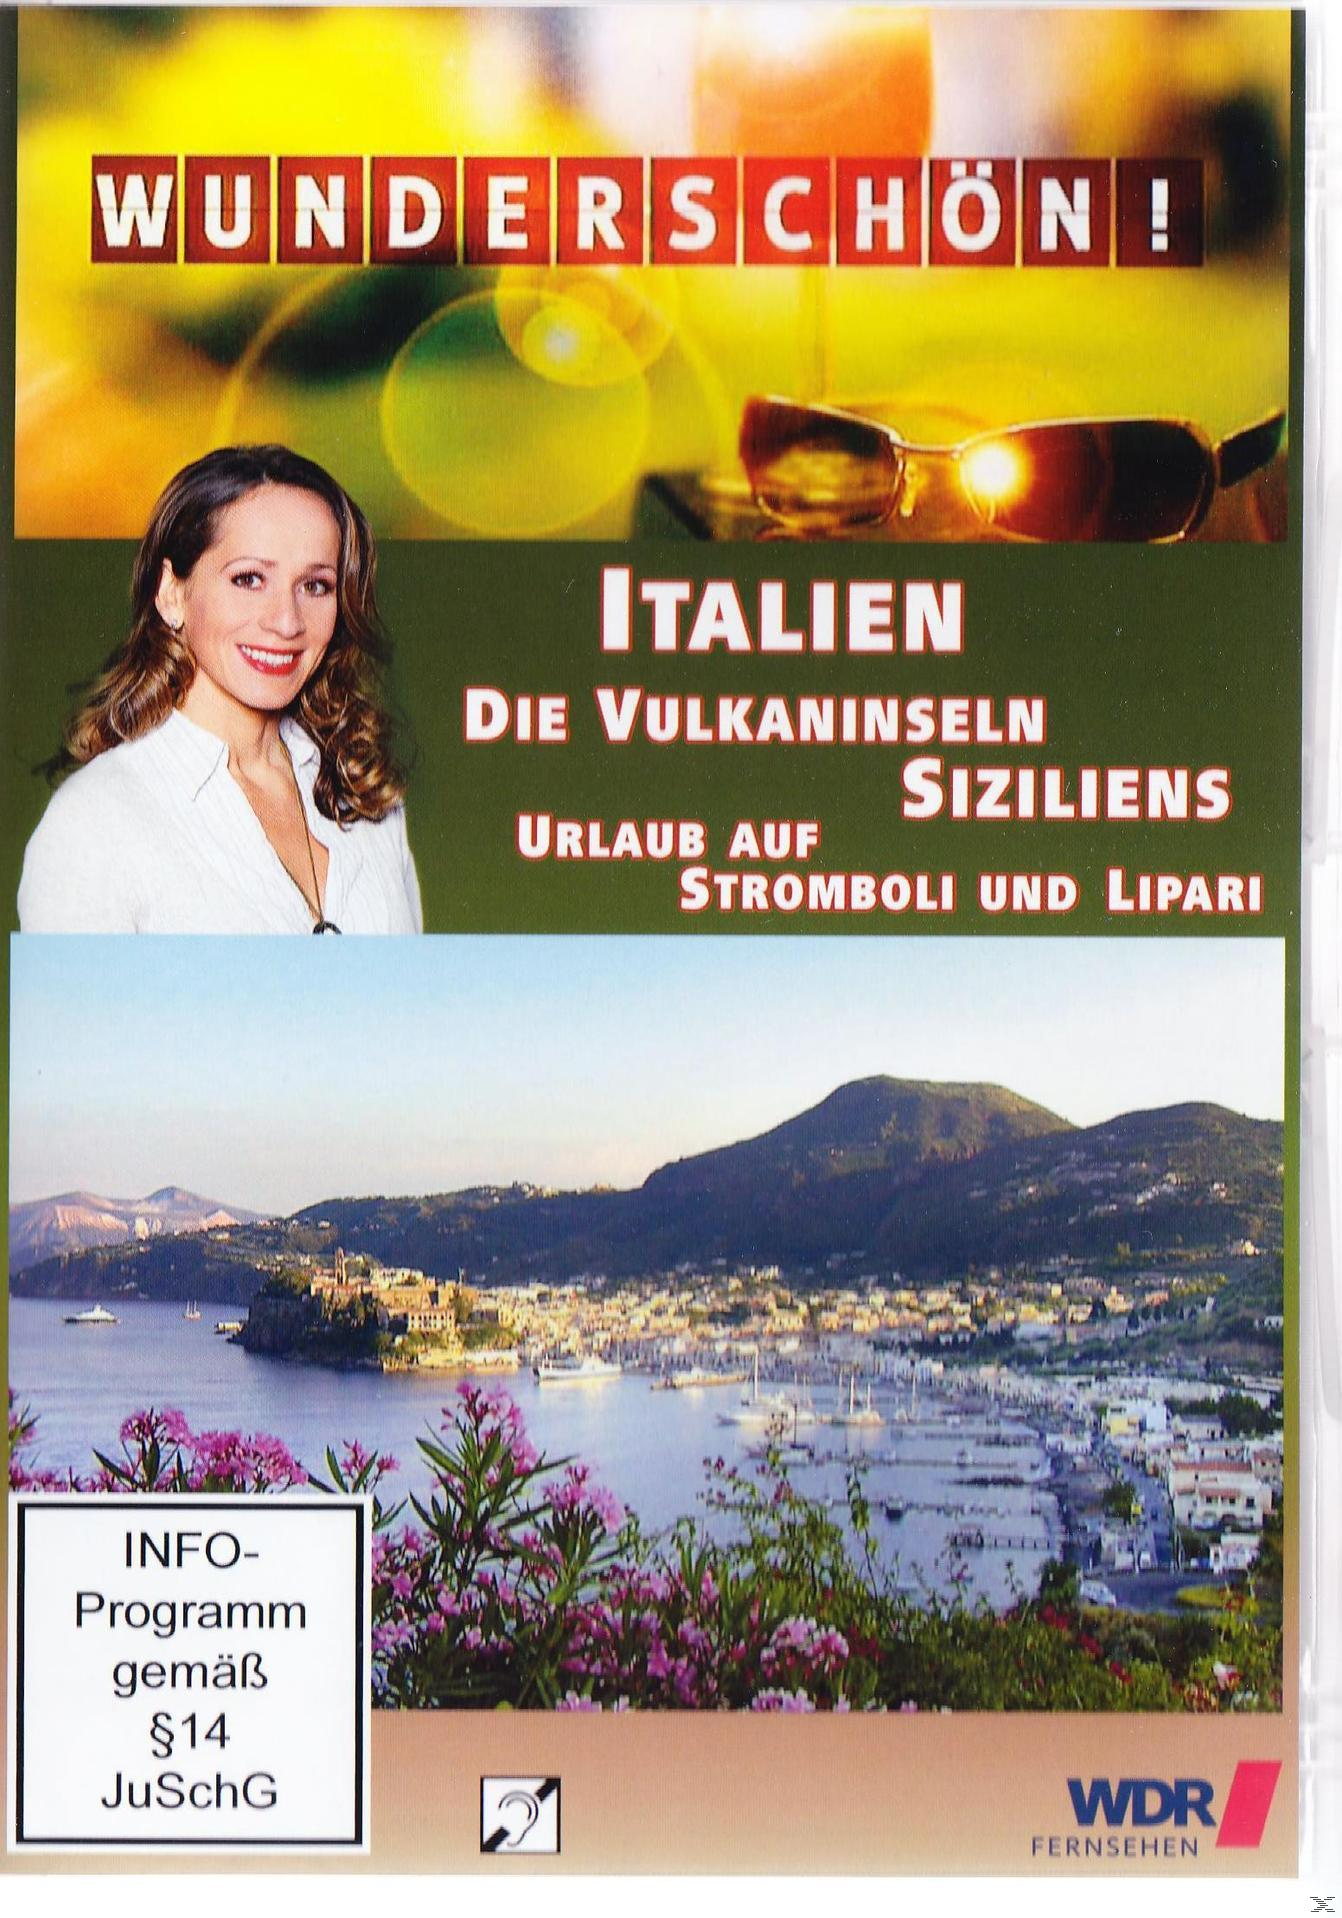 Wunderschön! - Siziliens Vulkaninseln auf DVD Urlaub Italien: Stromboli Lipari - und Die